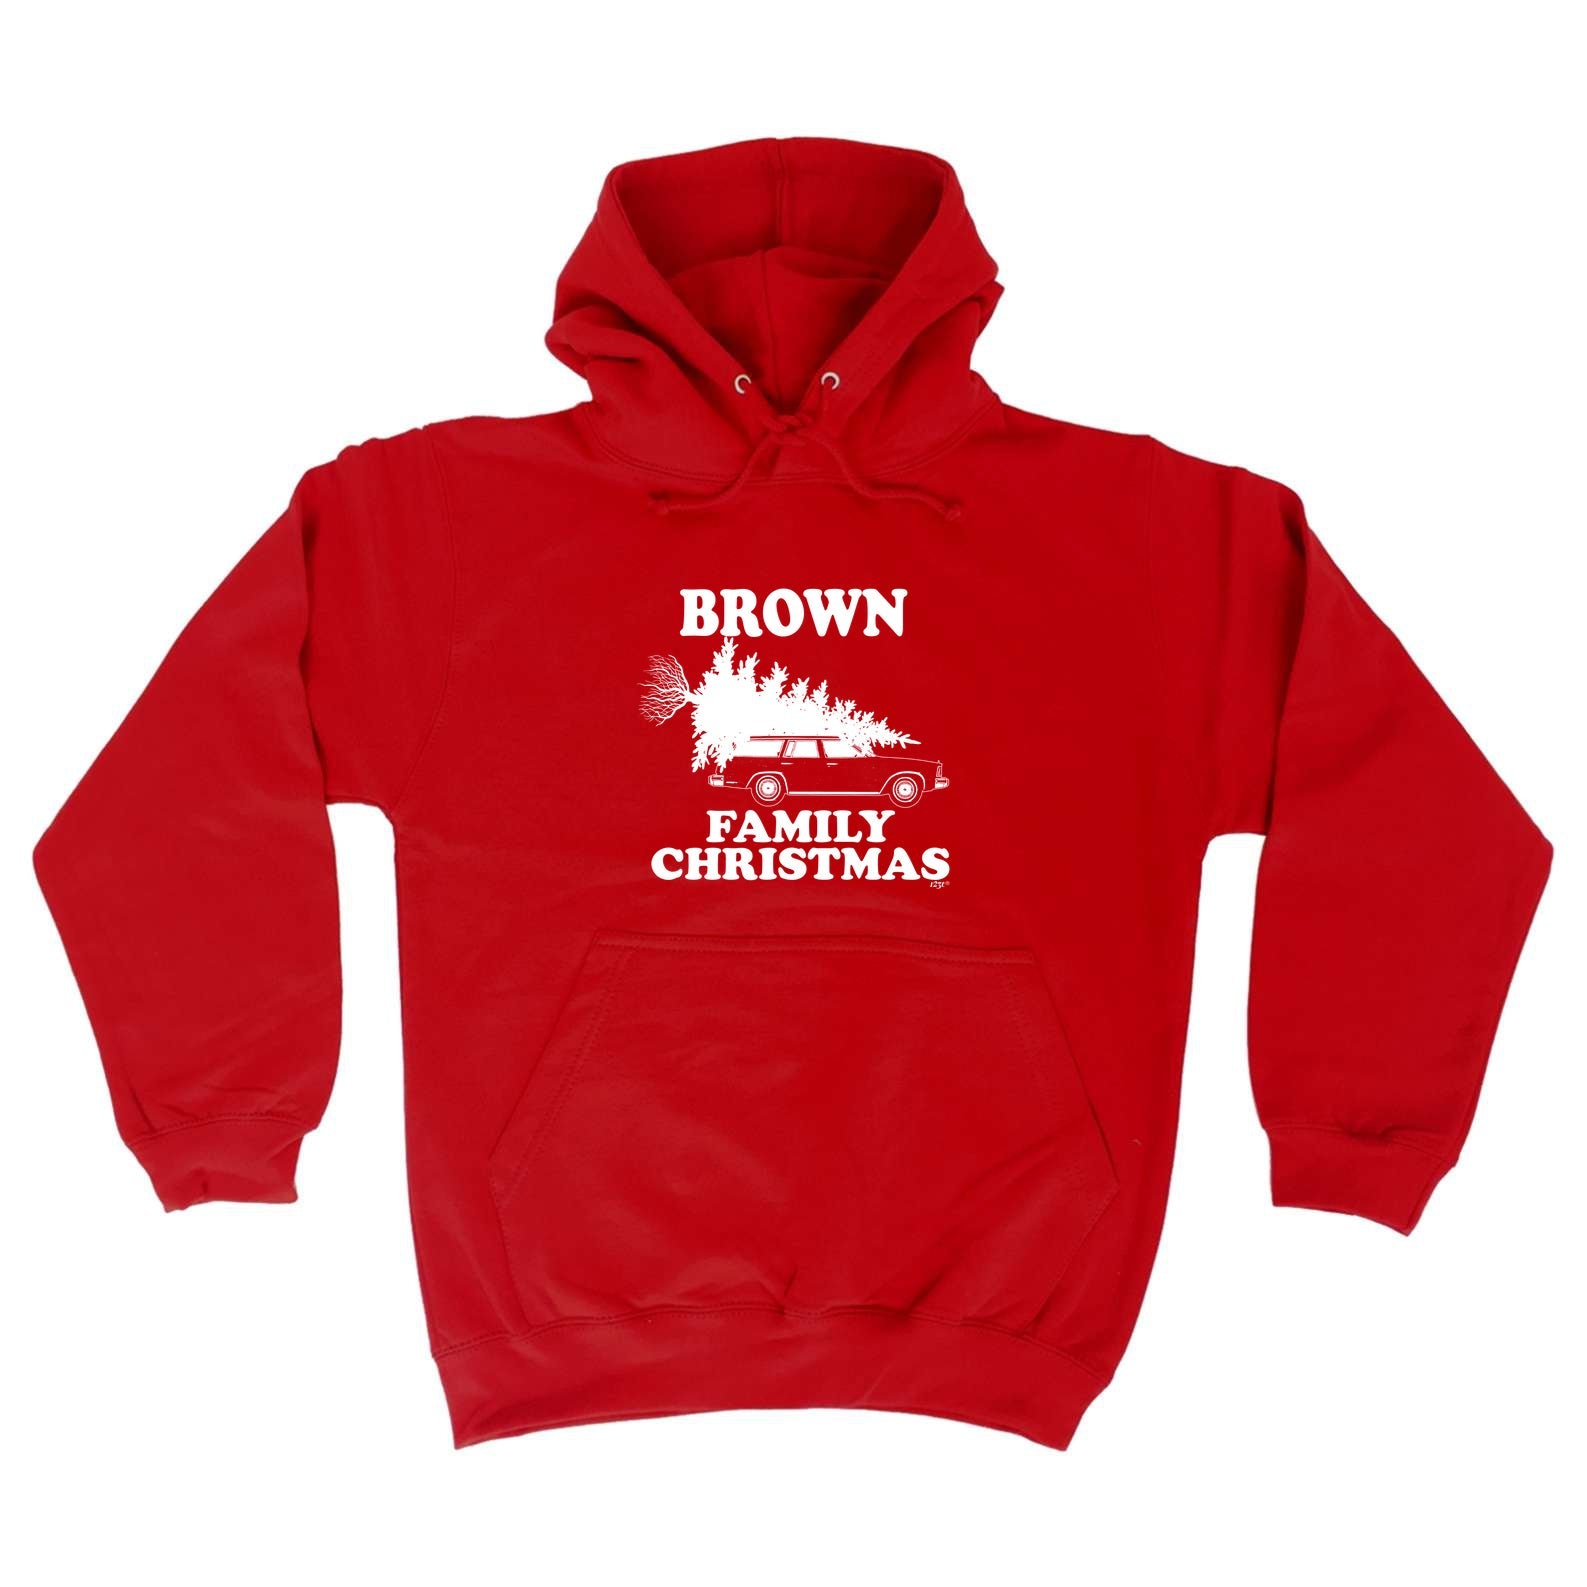 Family Christmas Brown - Funny Hoodies Hoodie